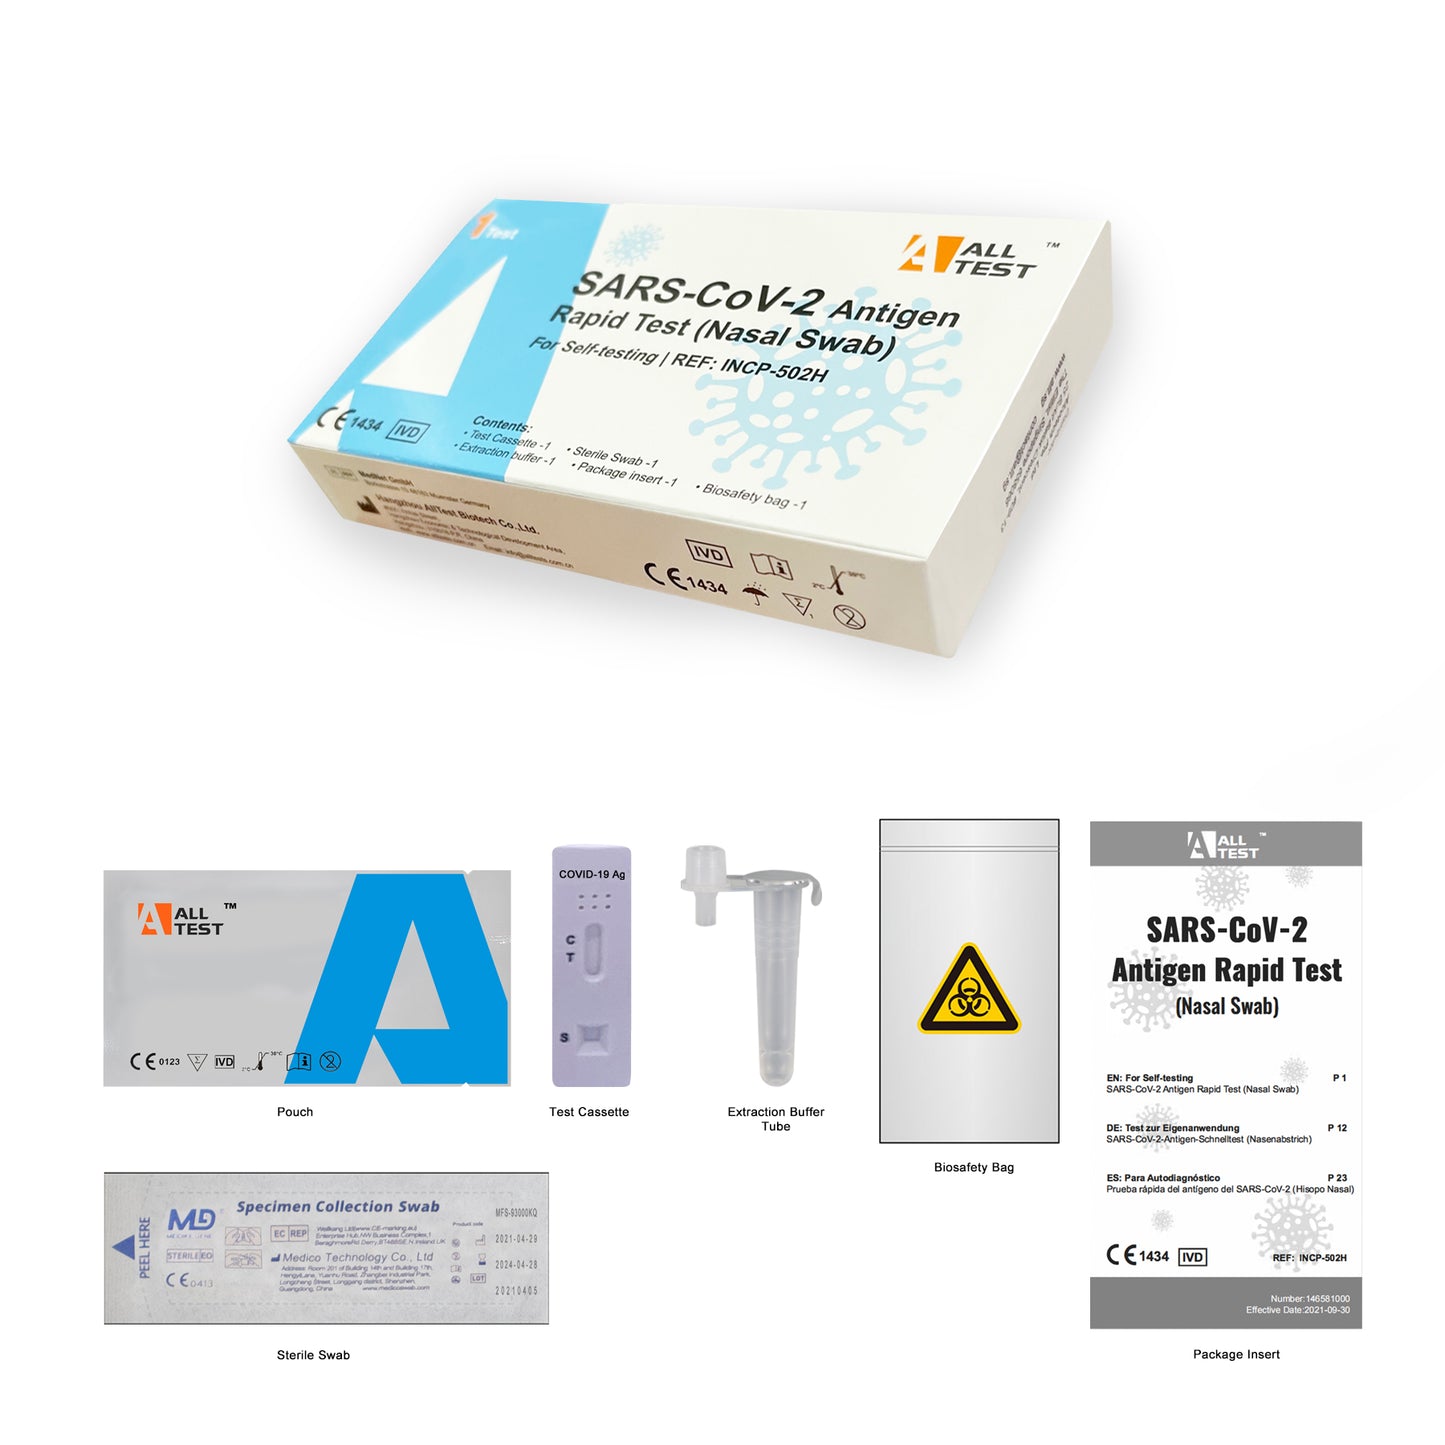 Alltest COVID-19 ART Antigen Rapid Test Kit (1 test/box)